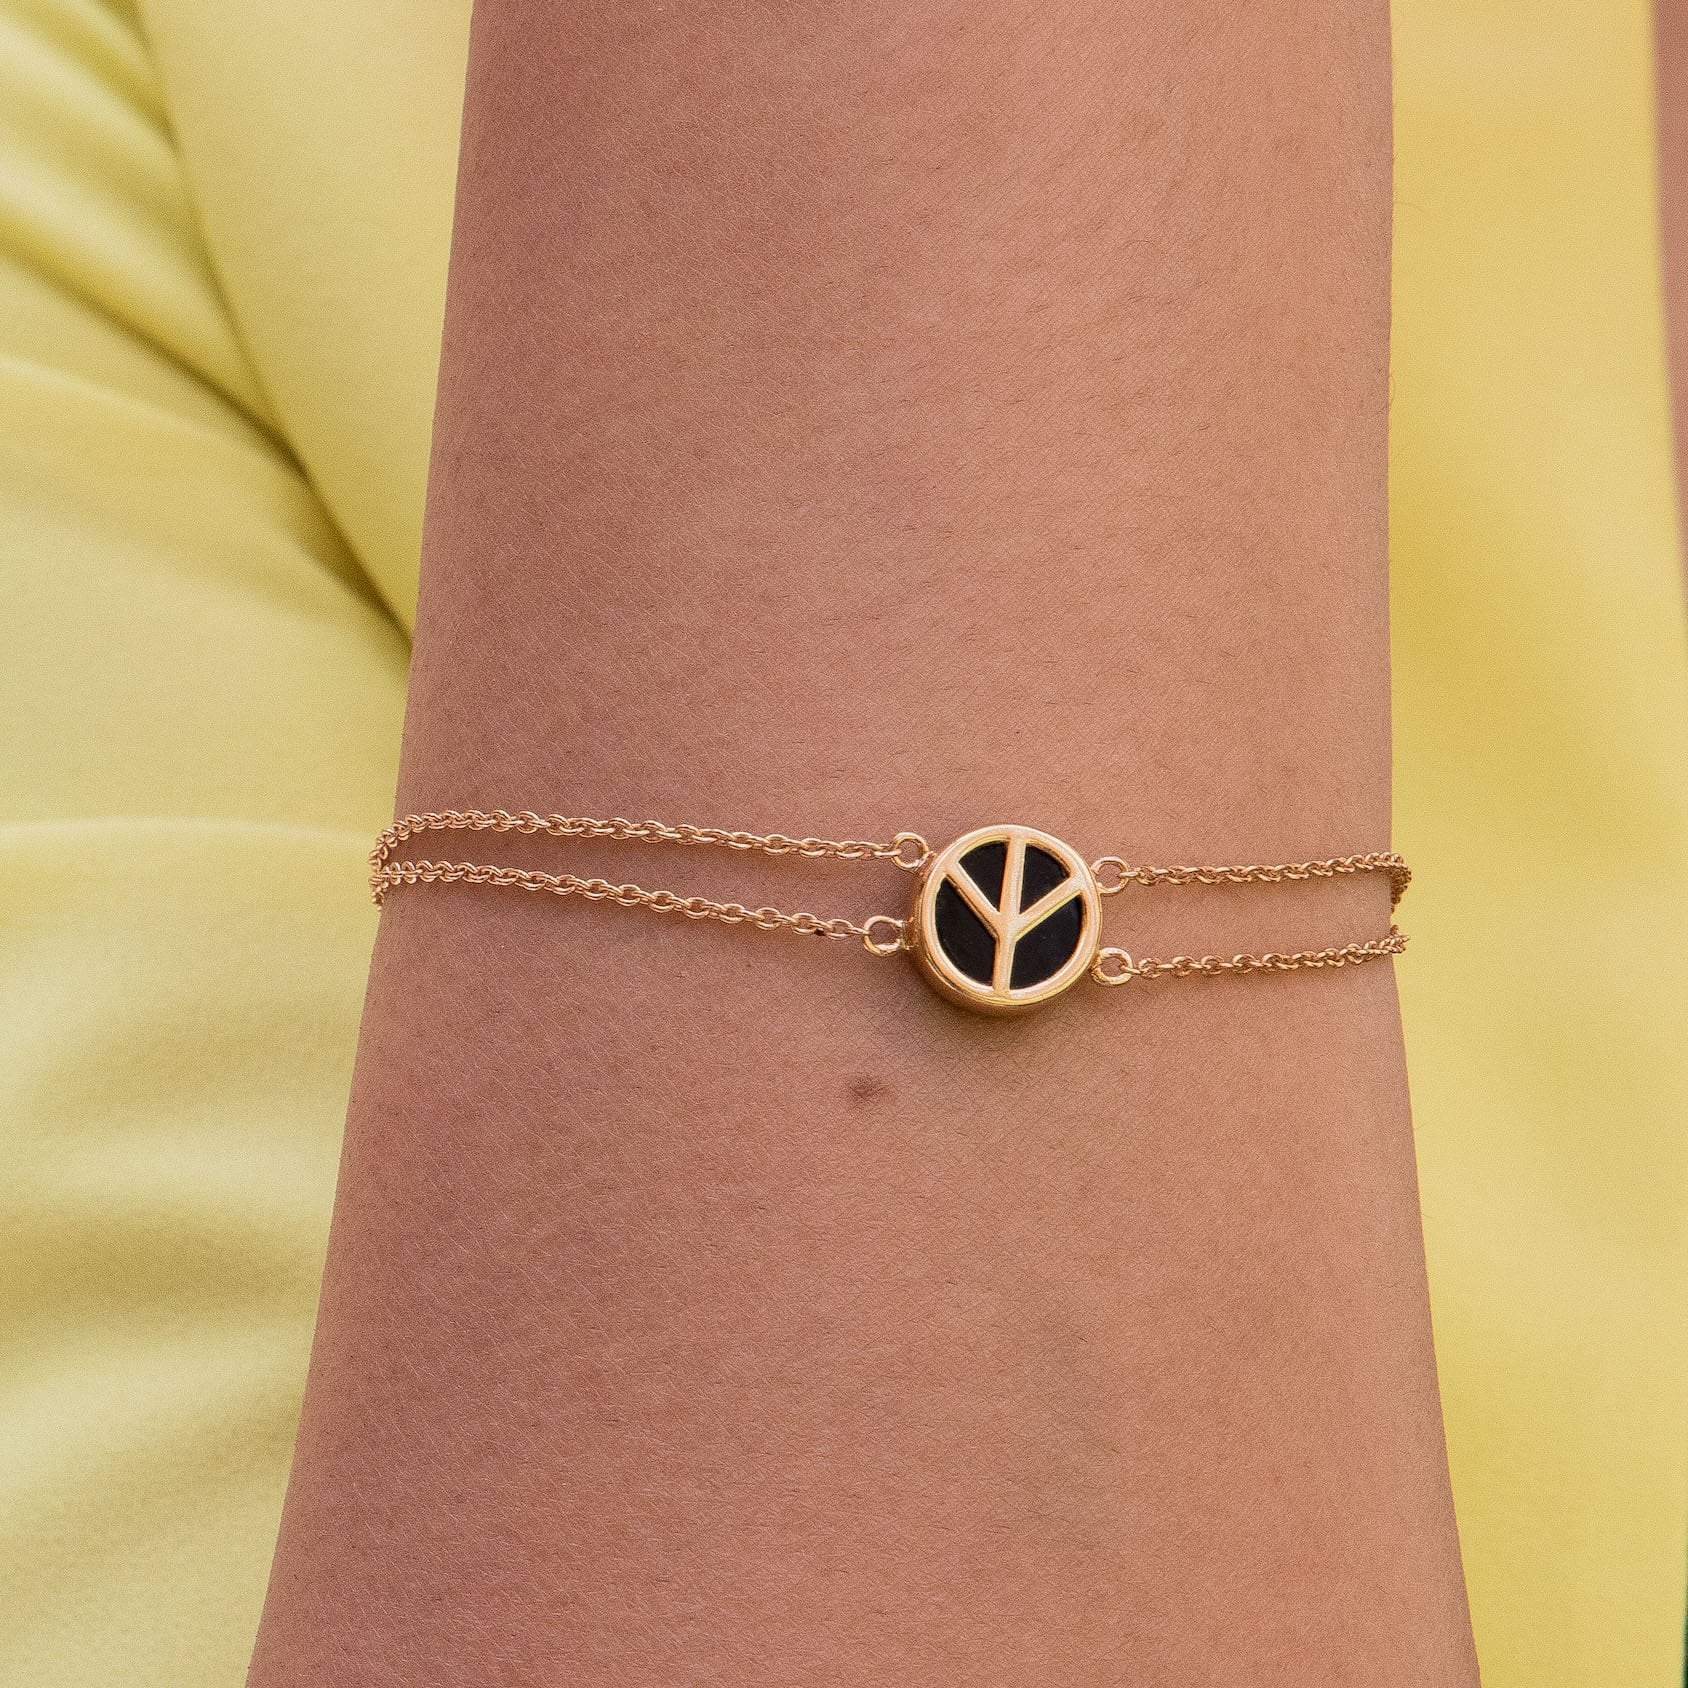 Tree Bracelet – Wear The Peace